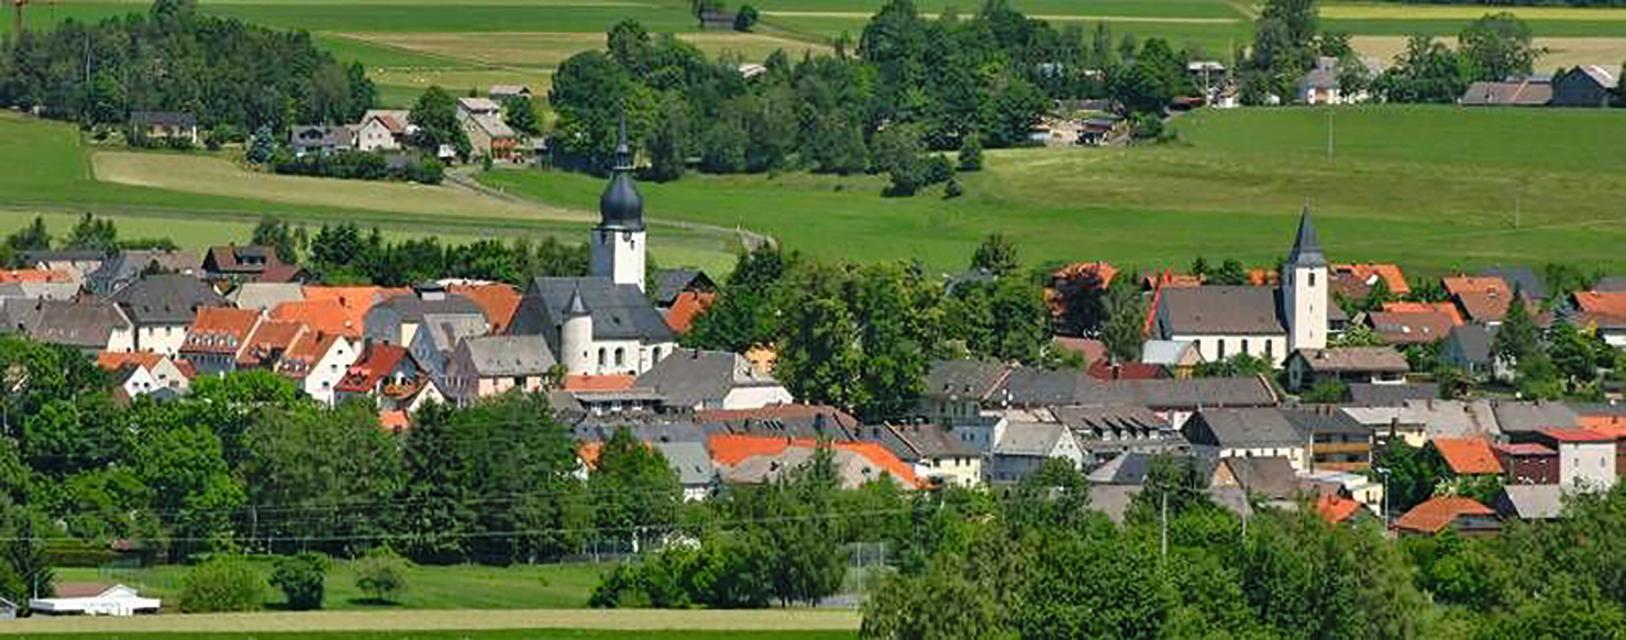 Thiersheim, mit seinen rund 2.000 Einwohnern, wurde 1182 erstmals urkundlich erwähnt. Der Ort liegt zentral im Landkreis Wunsiedel im Fichtelgebirge und hat einen eigenen Autobahnanschluss.